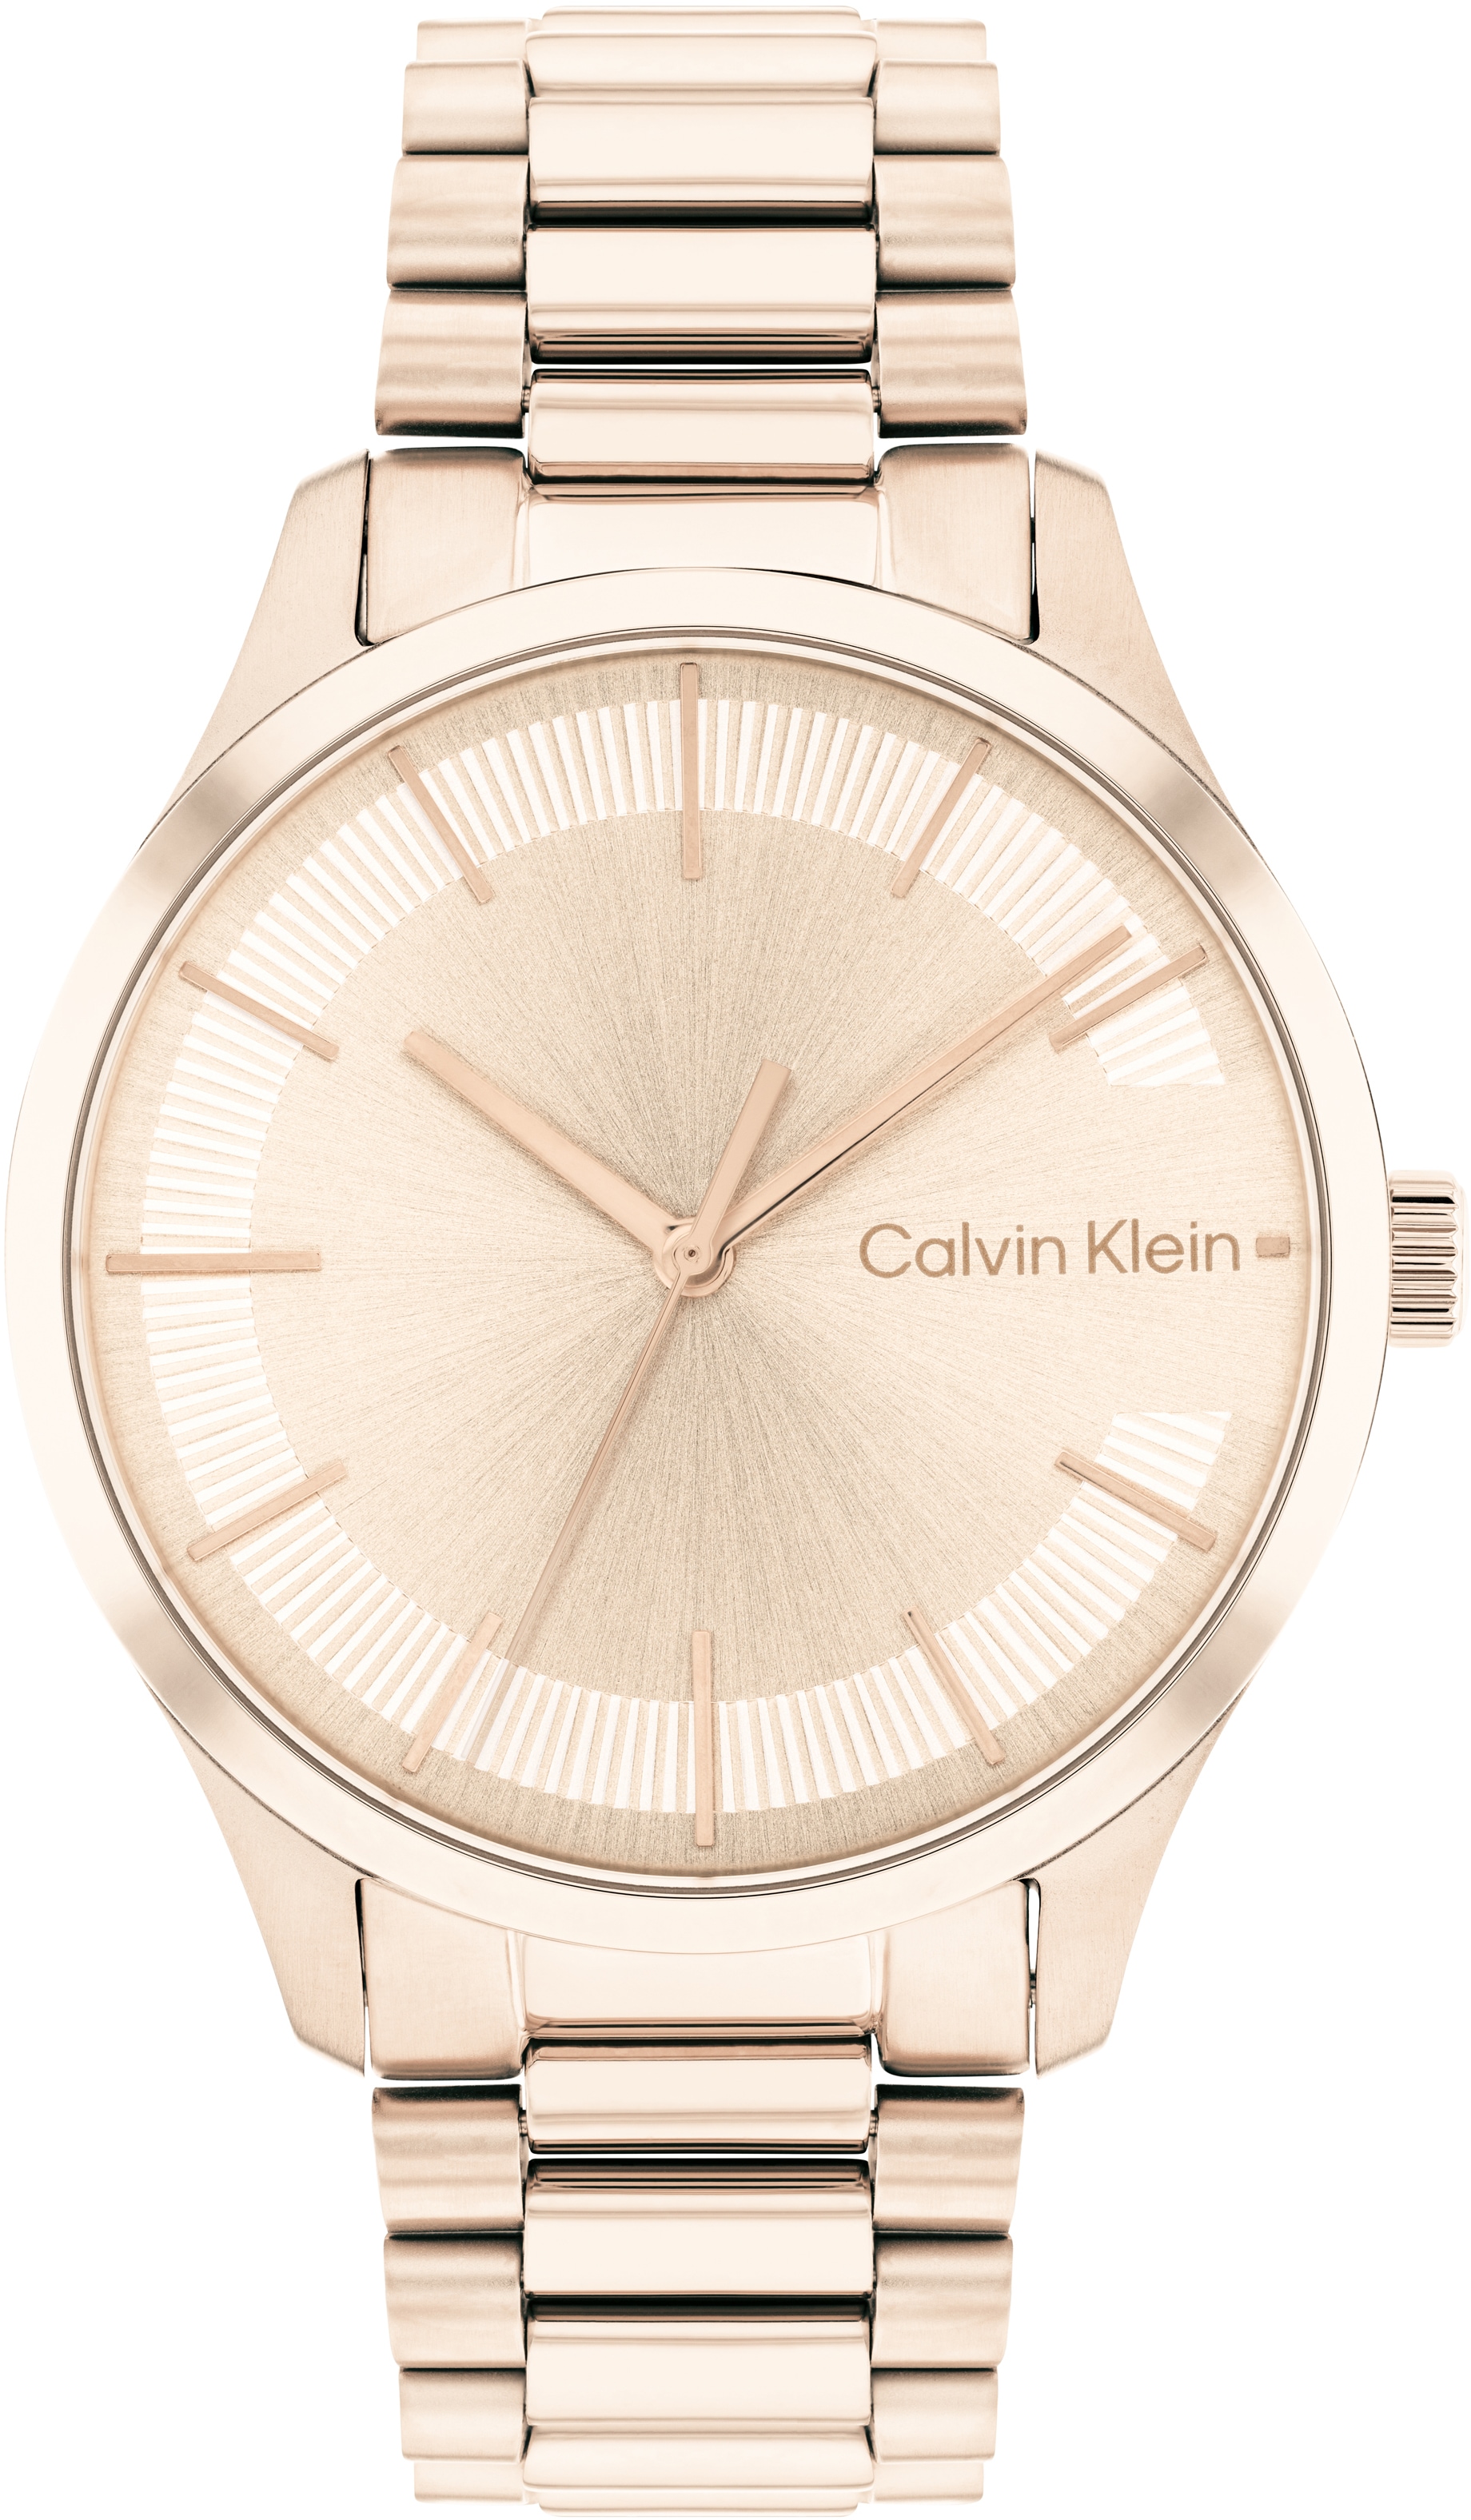 Calvin Klein Quarzuhr »Iconic Bracelet 35mm, 25200042«, Armbanduhr, Damenuhr, Mineralglas, IP-Beschichtung